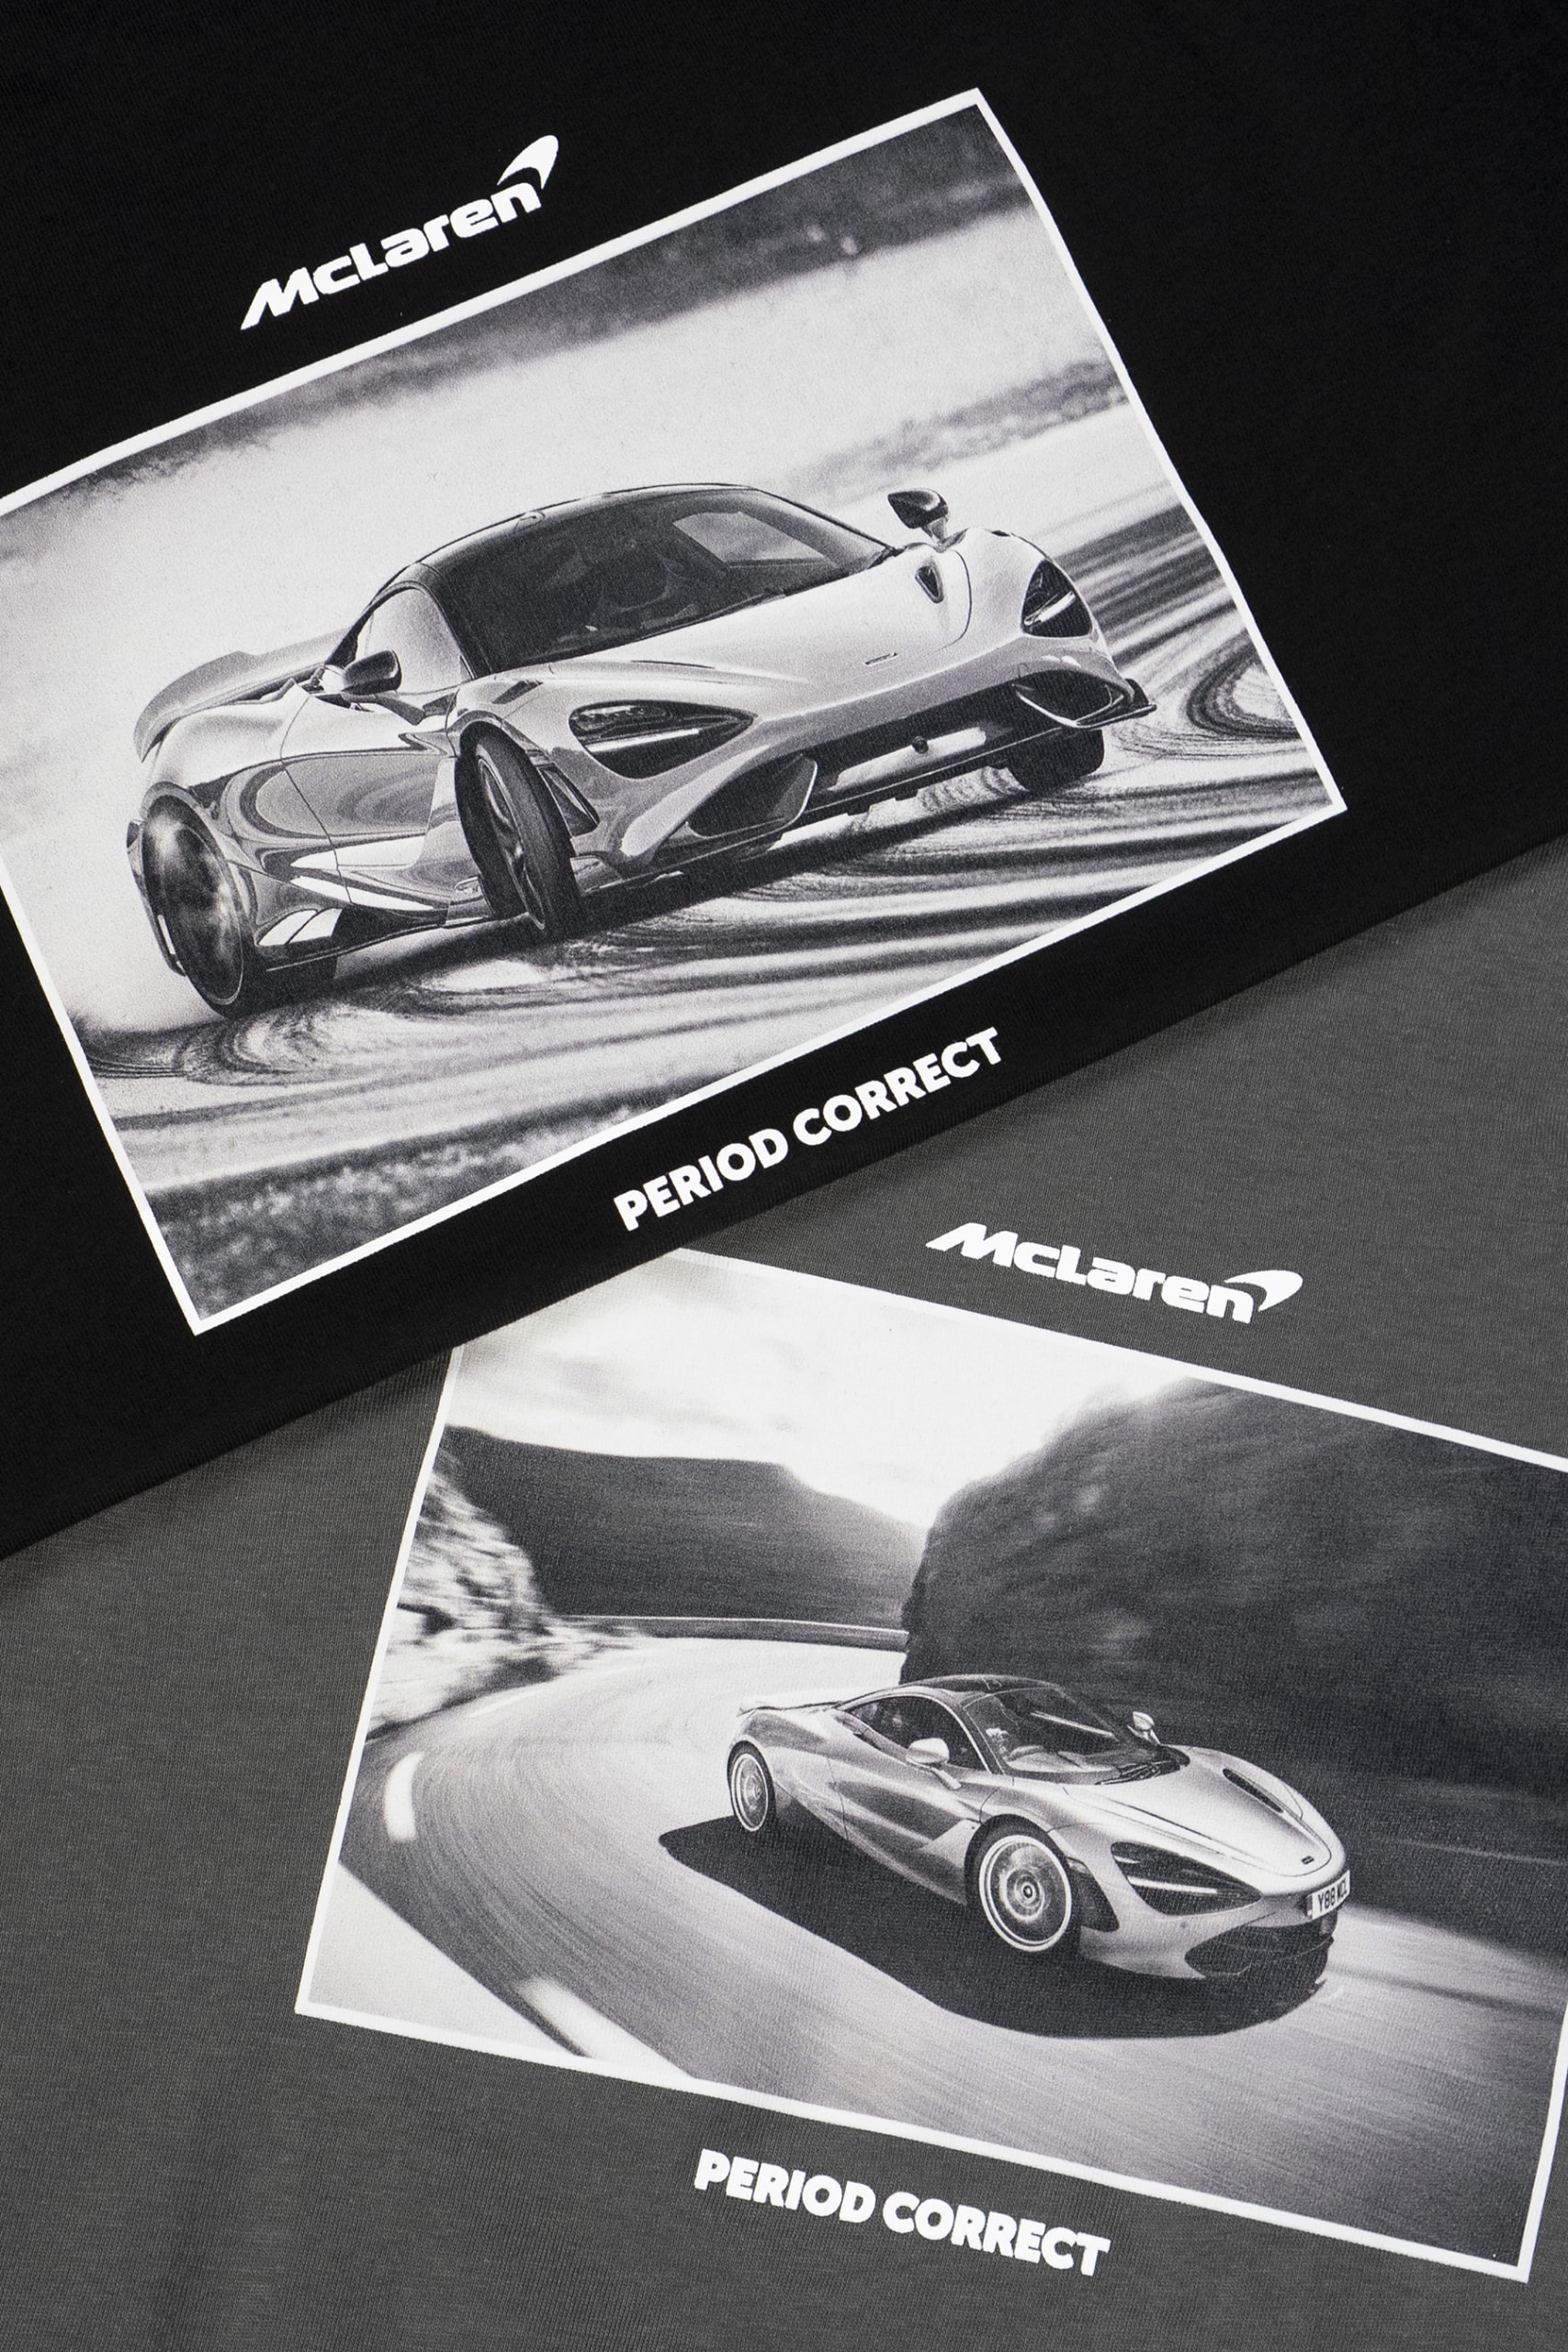 McLaren x Period Correct Merch Collection Drop